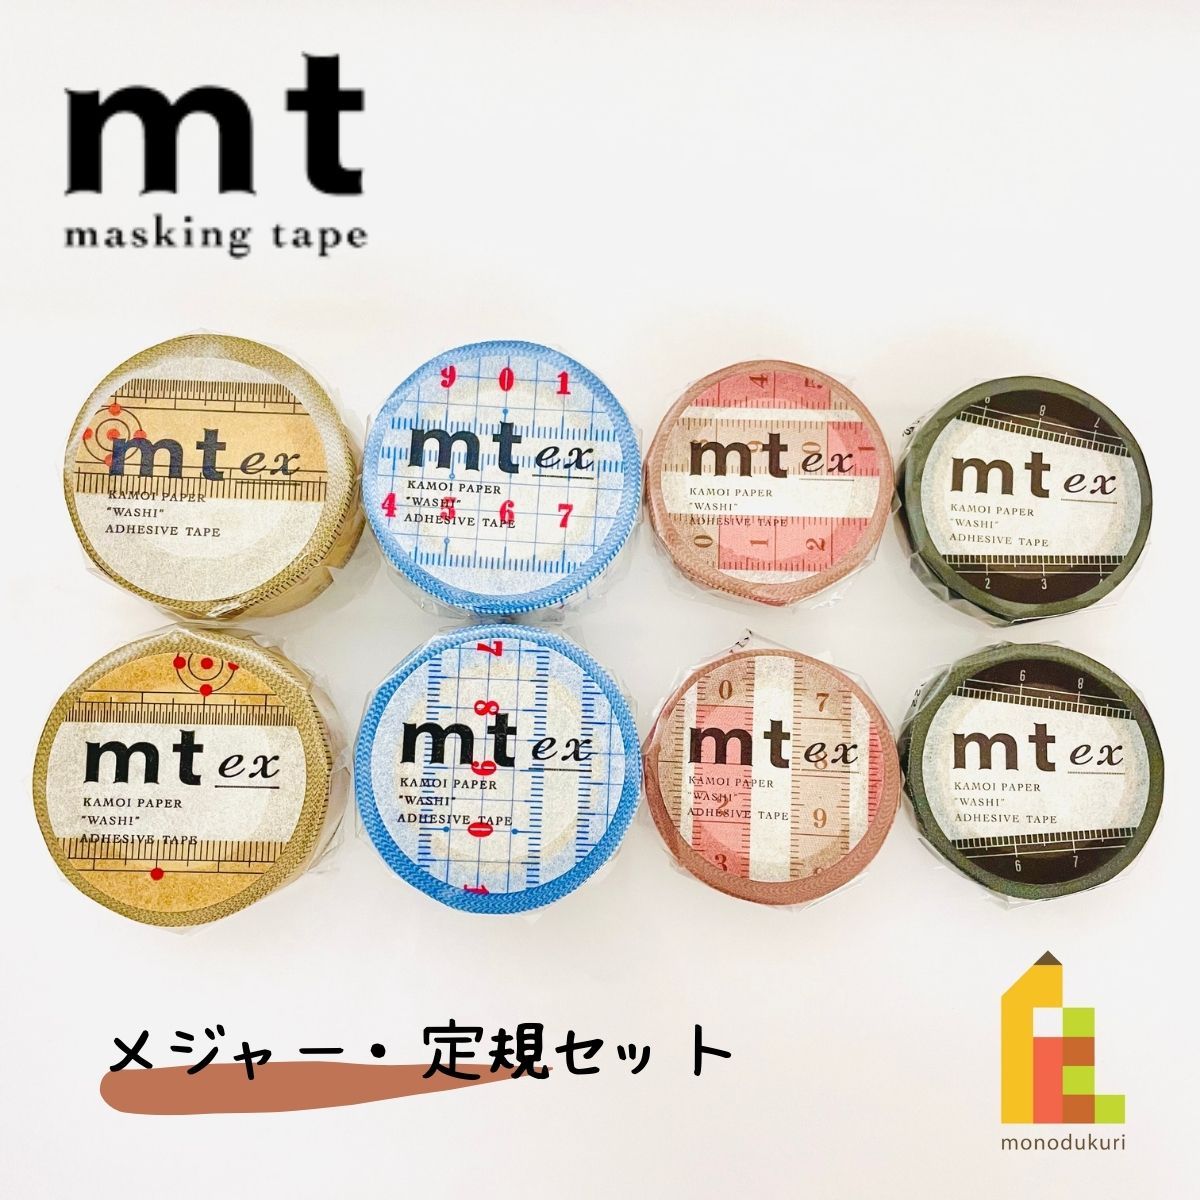 1,000 иен ровно план маскировочная лента утка . обработка бумага mt Major линейка 8 шт комплект шт упаковка MT1000-10 бесплатная доставка 